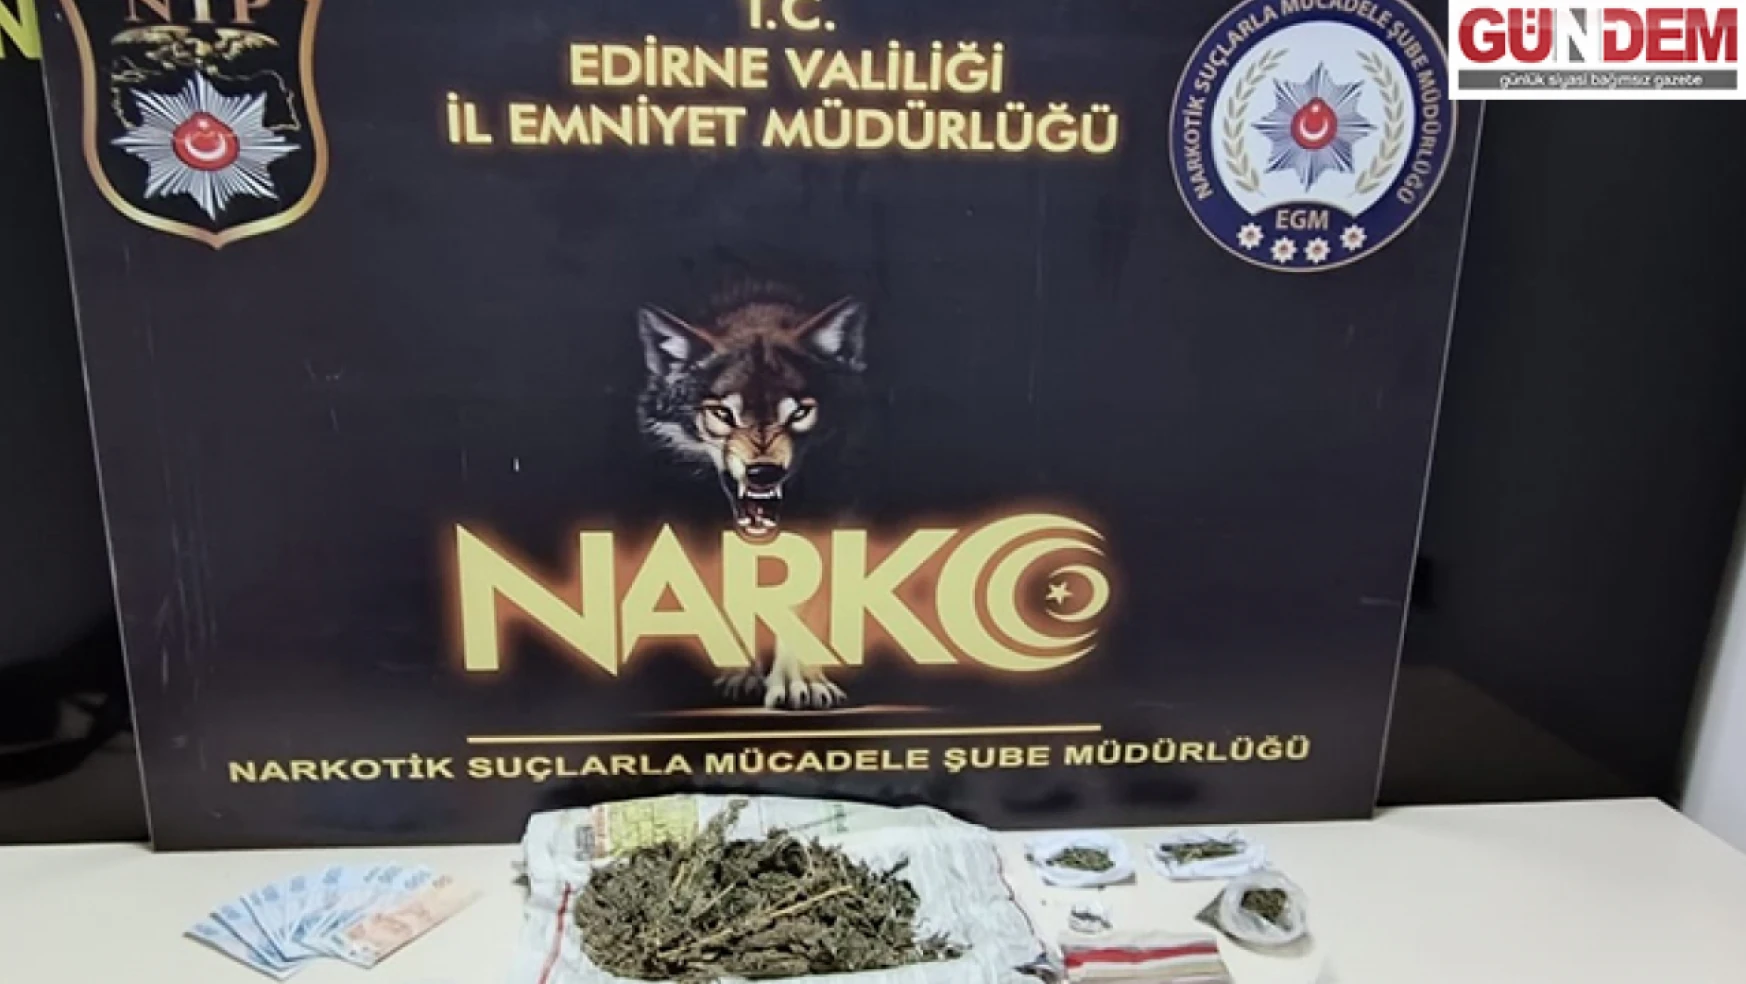 Edirne'de 44 uyuşturucu şüphelisi hakkında işlem yapıldı, 4 şüpheli gözaltına alındı